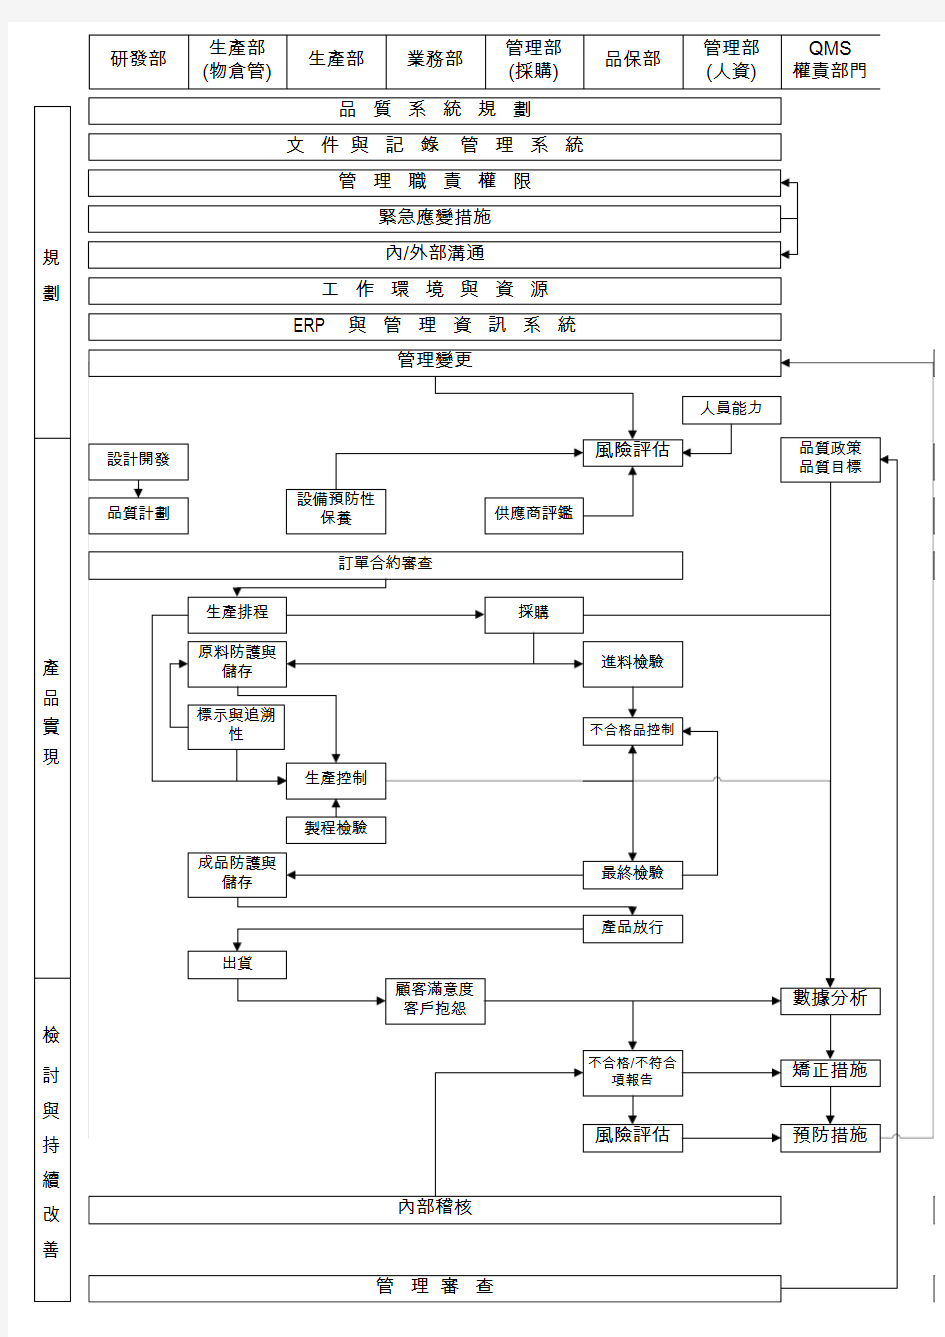 品质系统架构流程图